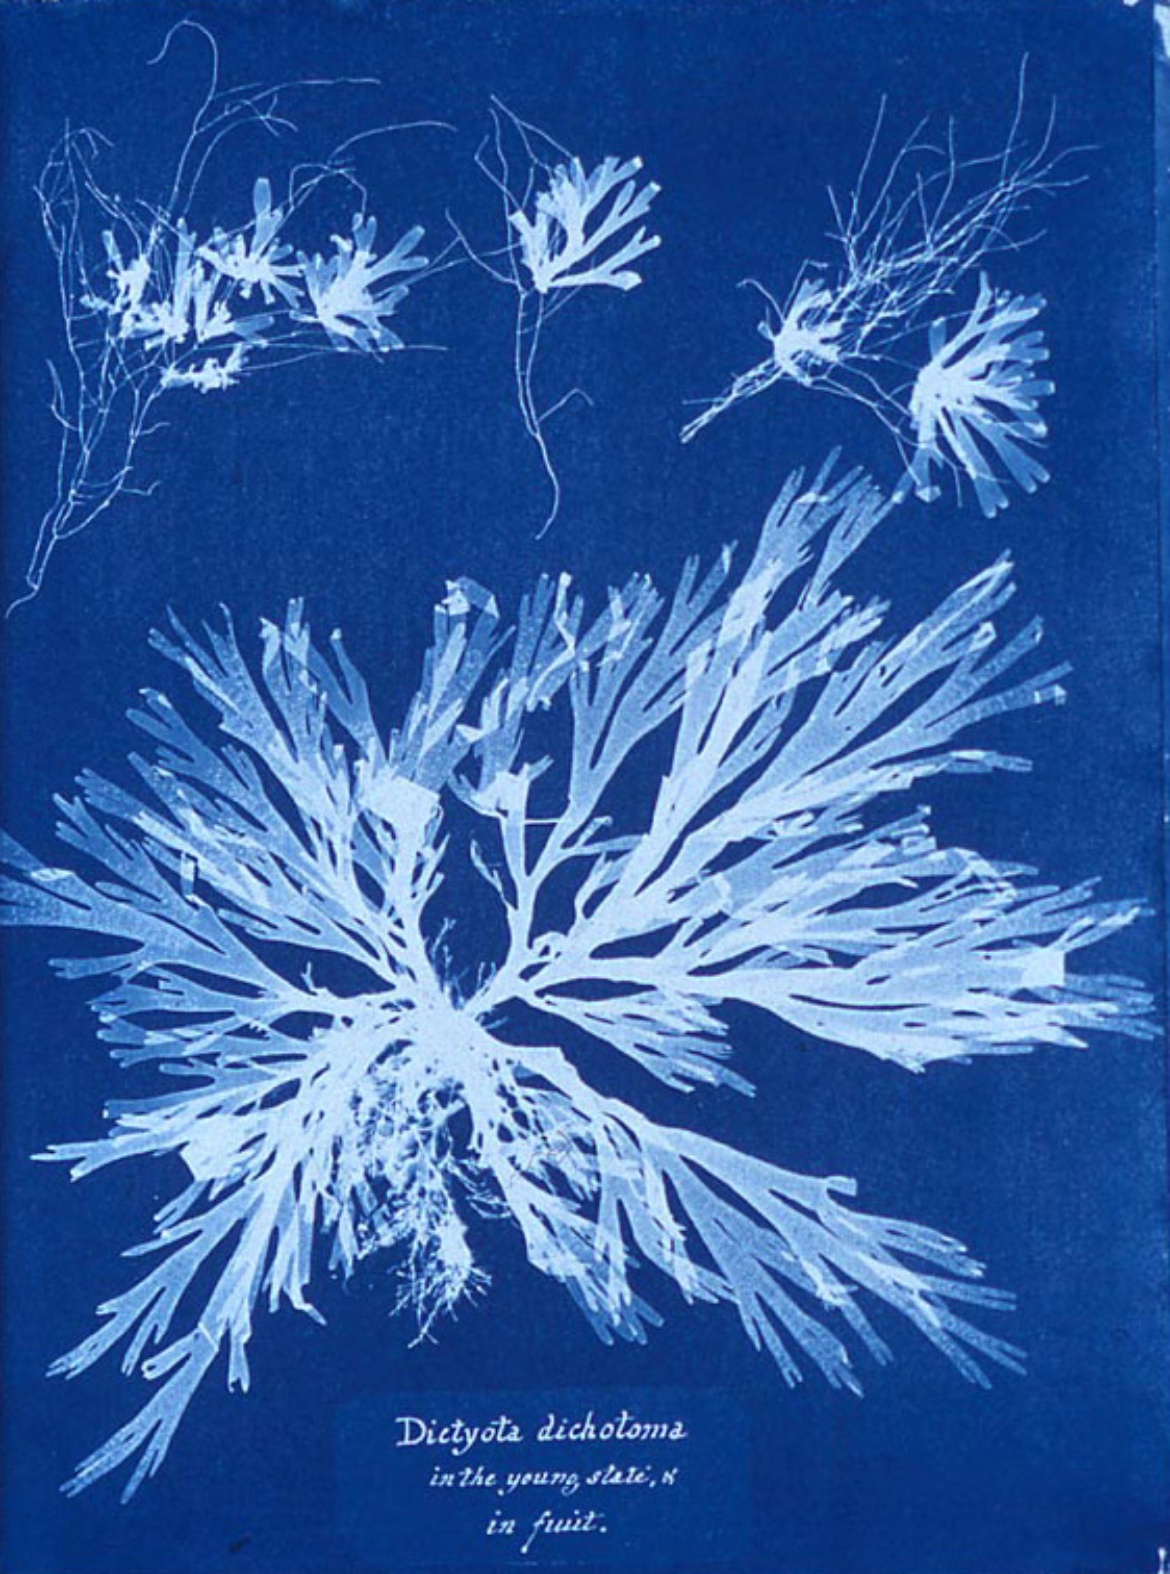 Anna Atkins "Algae" (Cyanotypie)